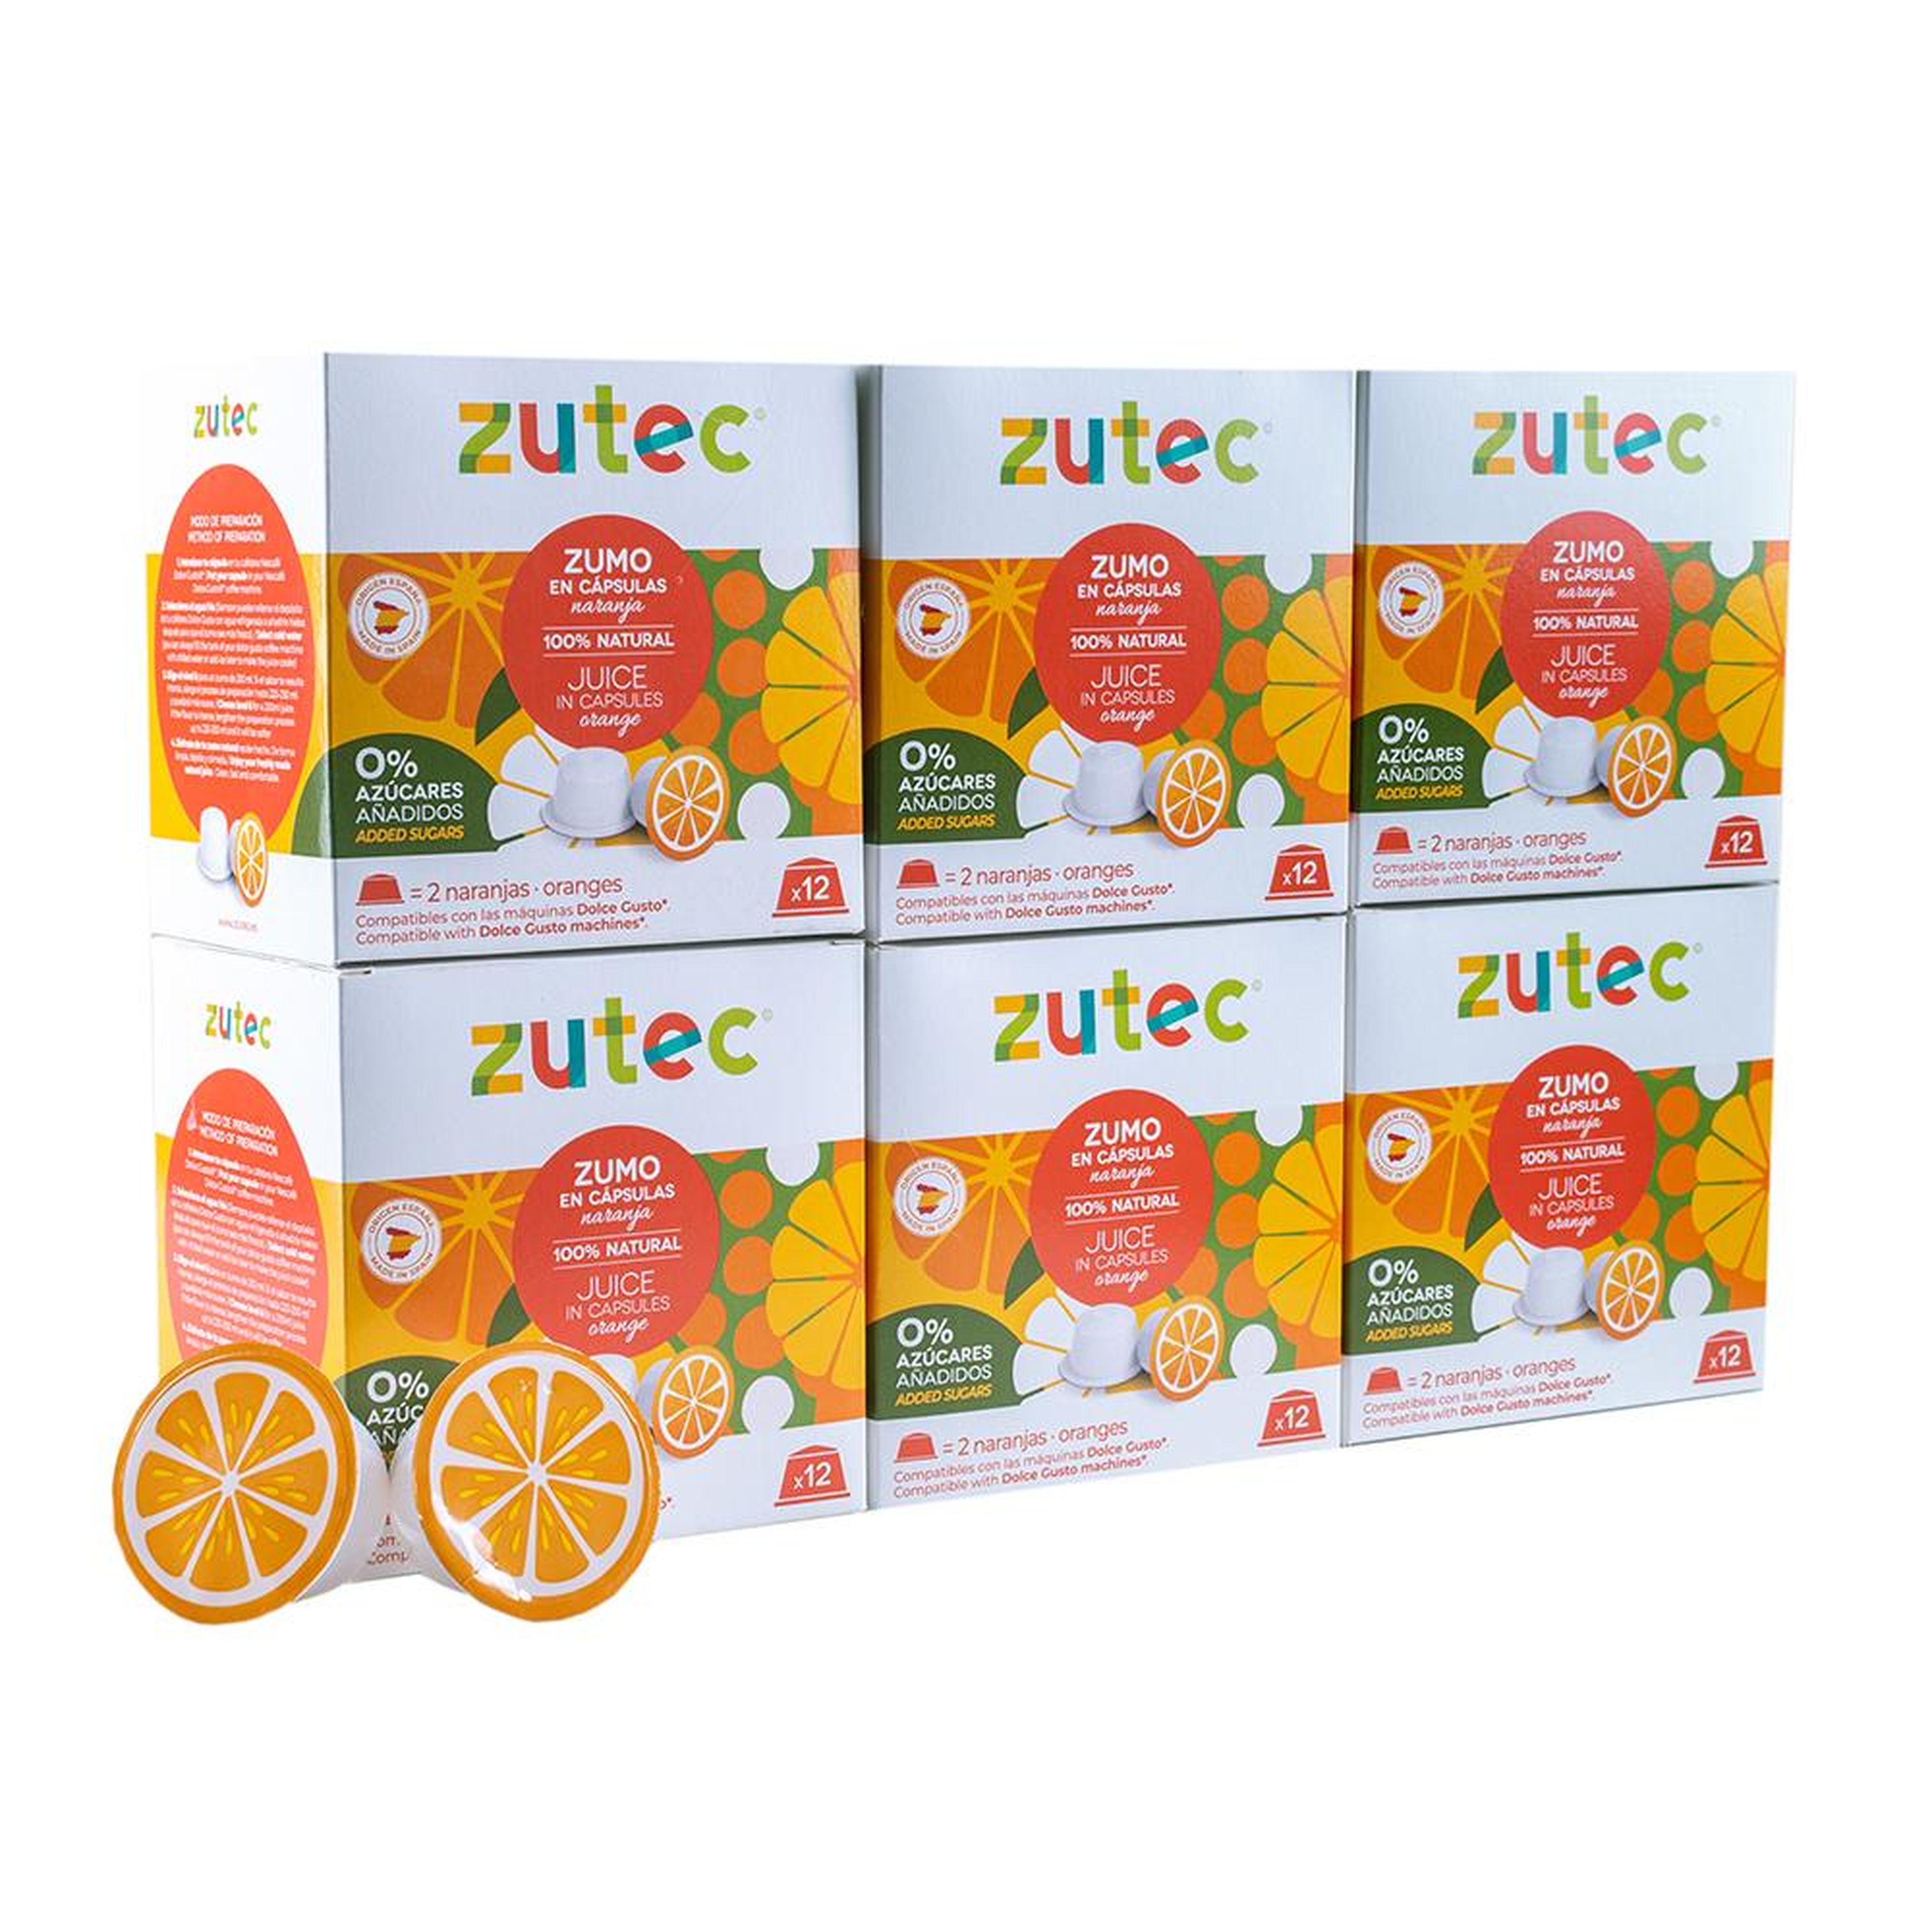 Cápsulas de frutas para hacer zumo, de Zutec.